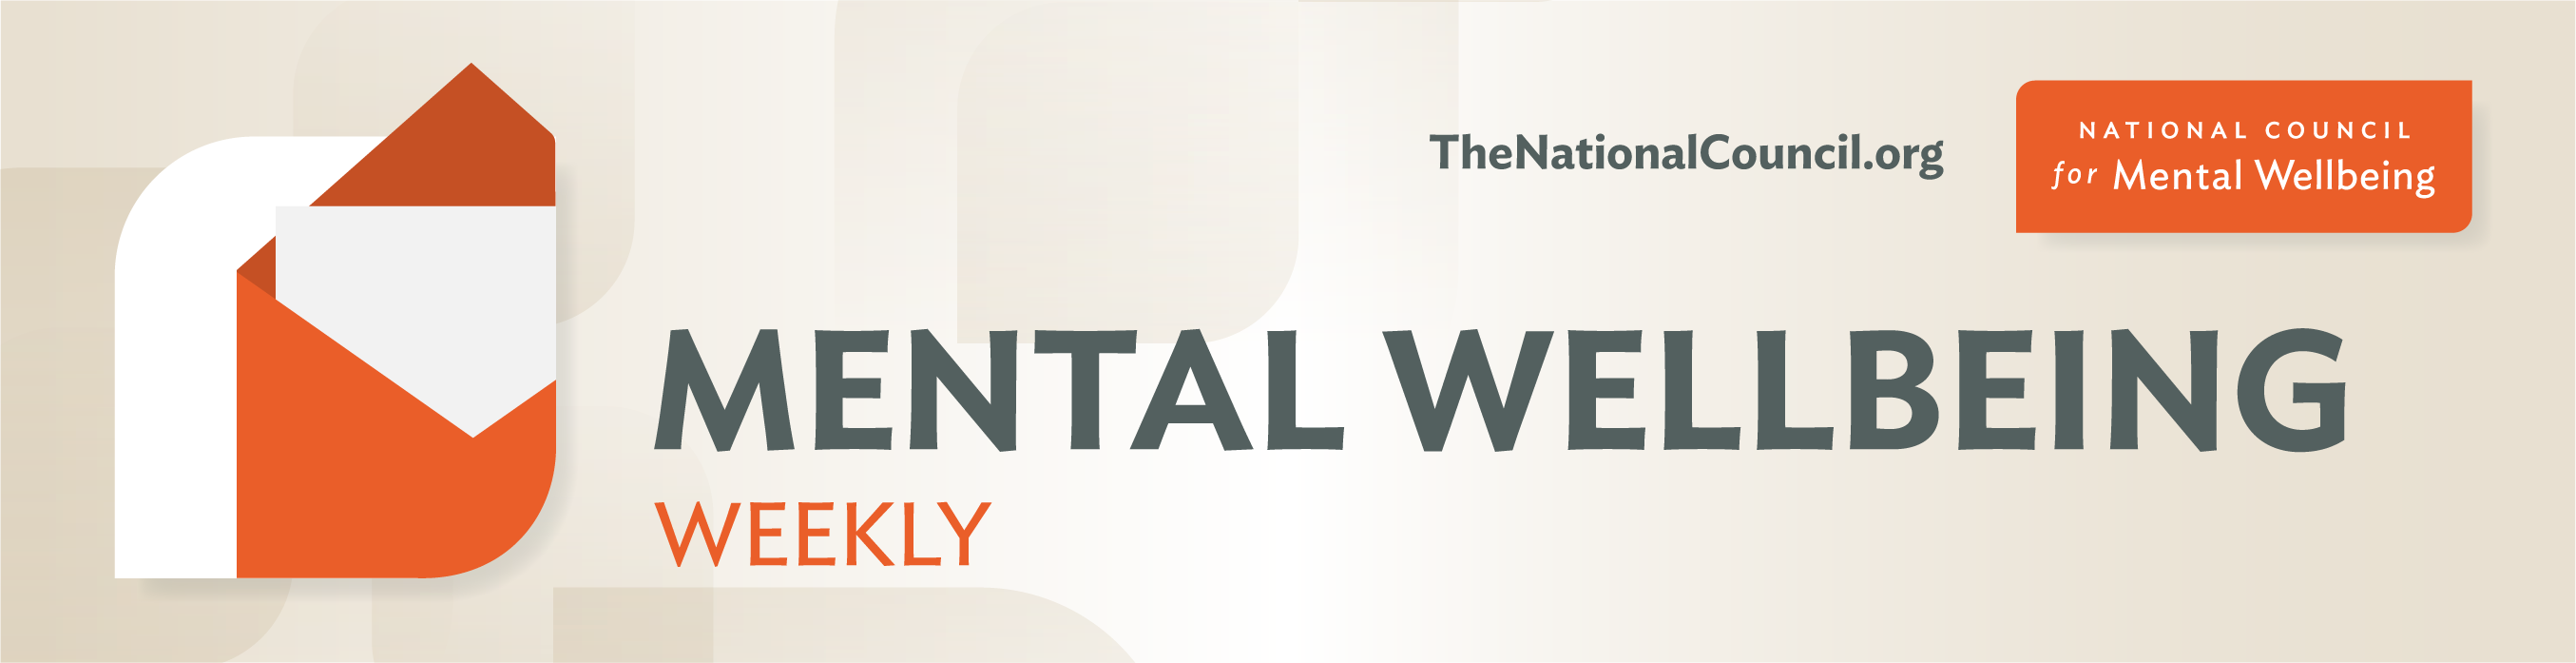 Mental Wellbeing Weekly